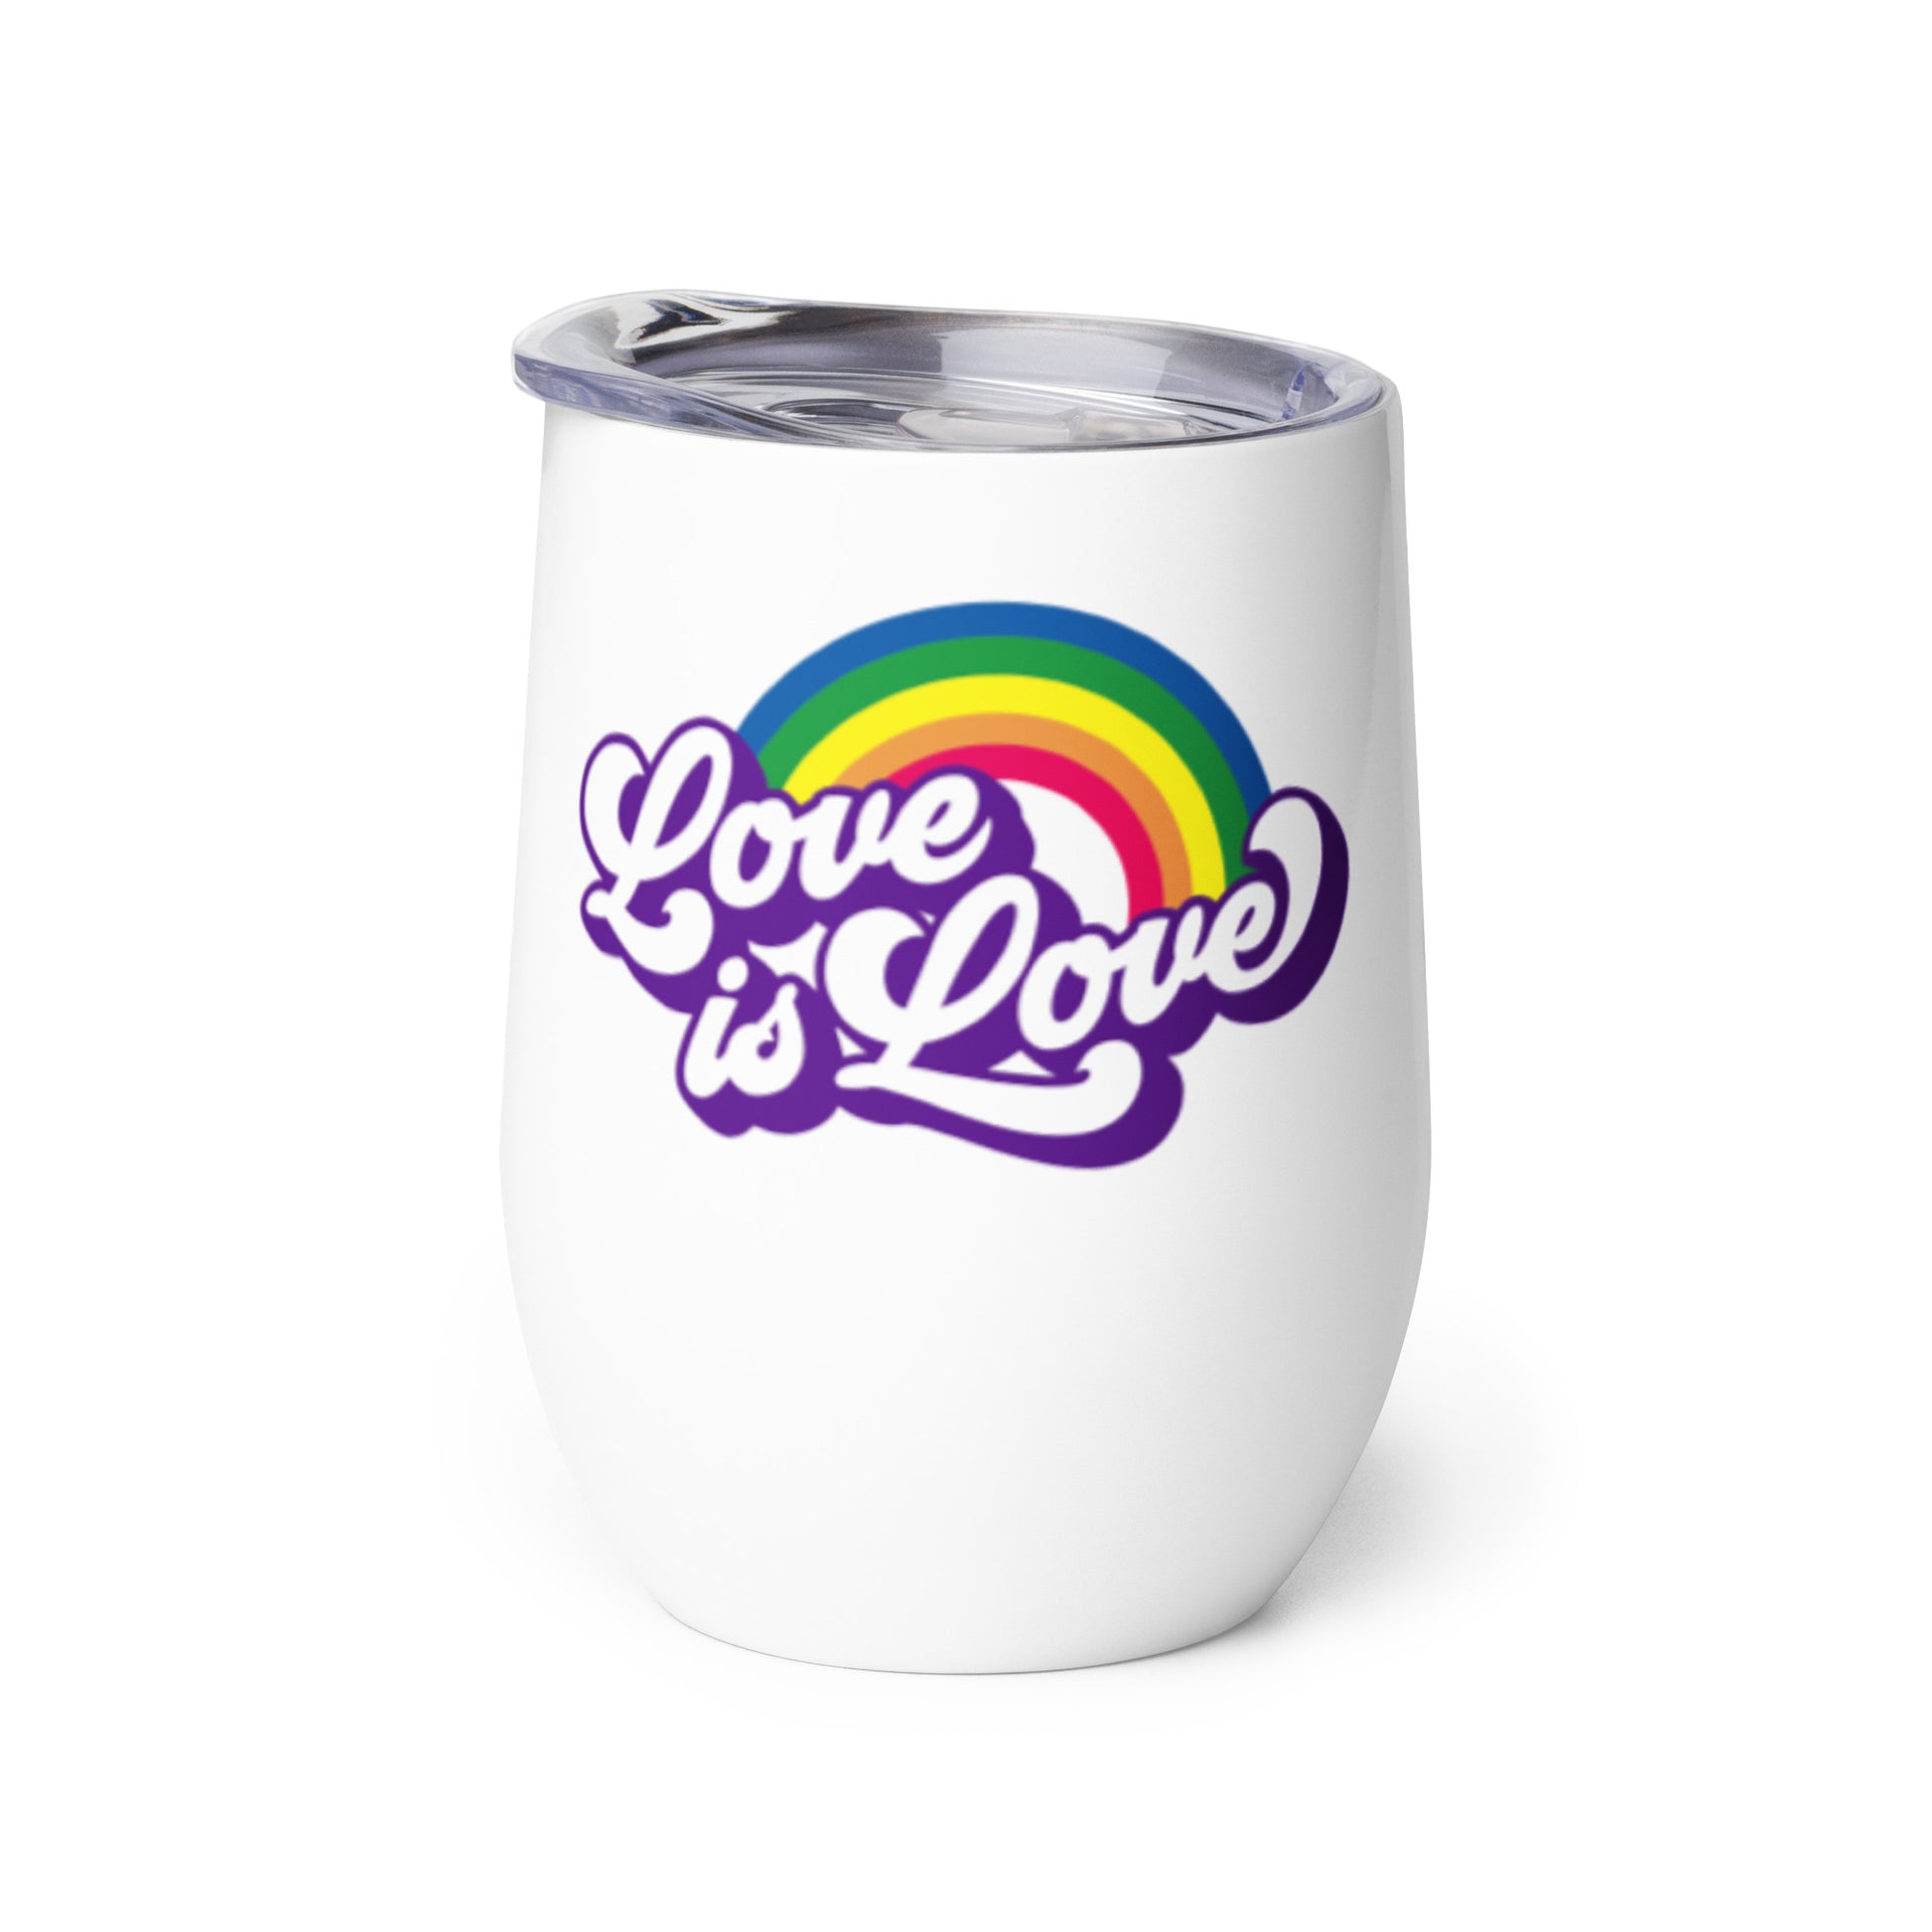 Love is Love Gay Pride Wine tumbler - gay pride apparel